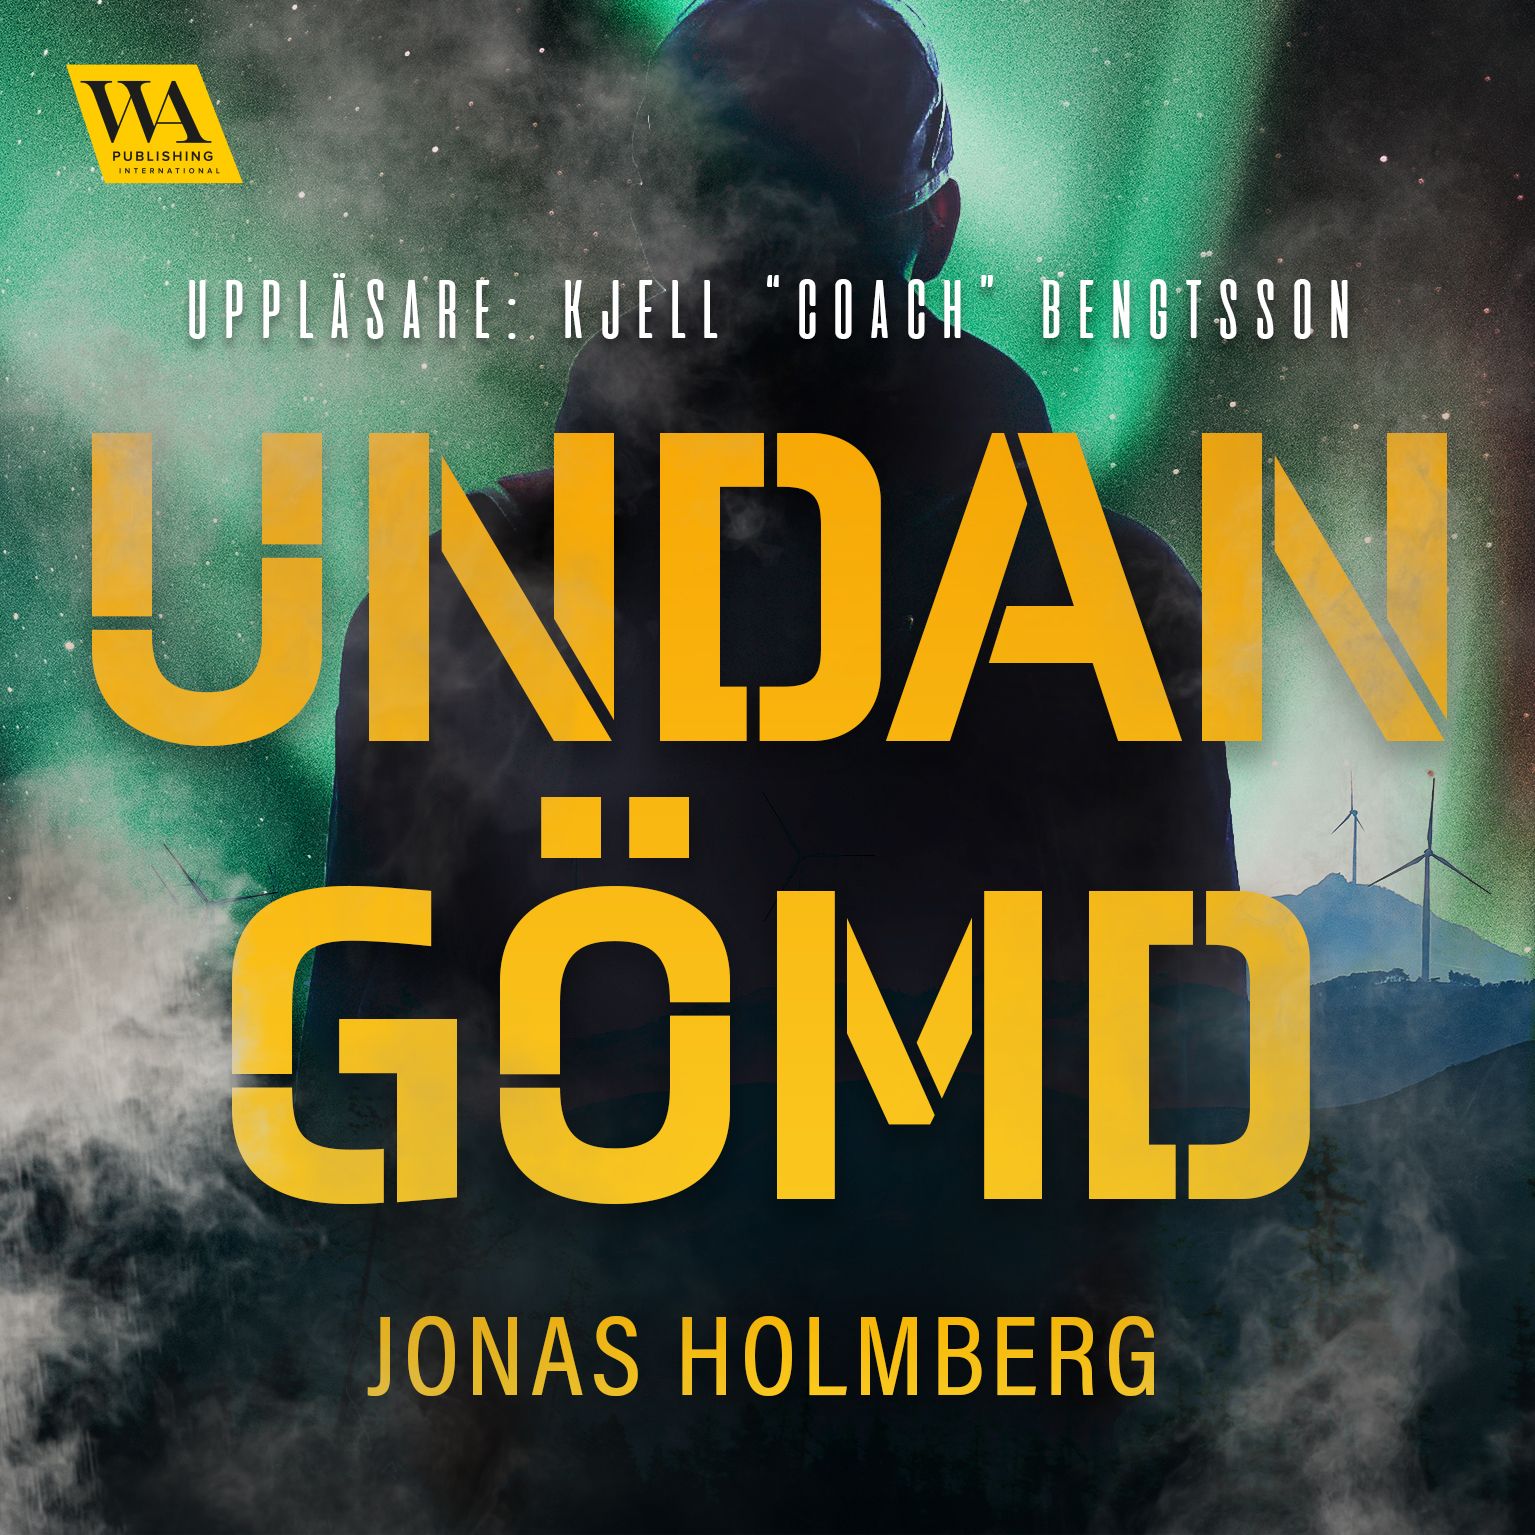 Undangömd, ljudbok av Jonas Holmberg